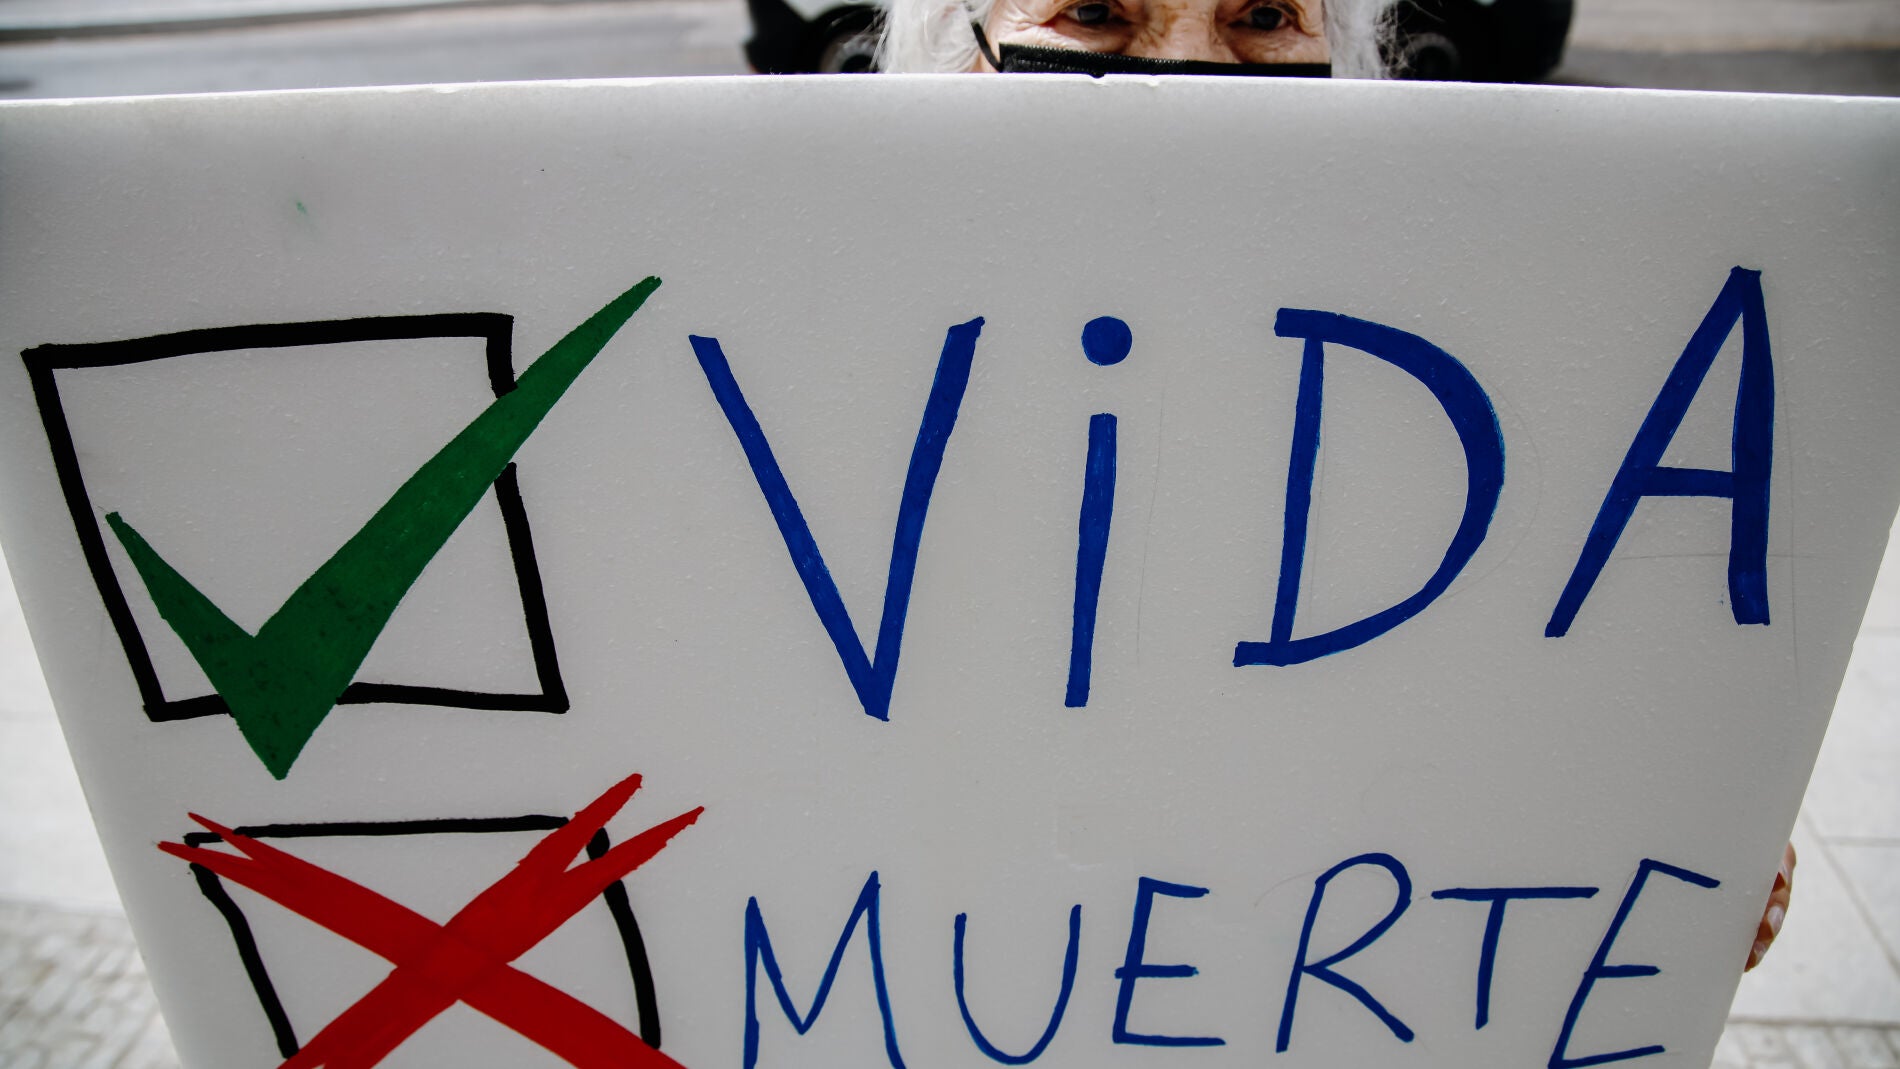 Aborto en Madrid: Estas son las subvenciones para centros referidos